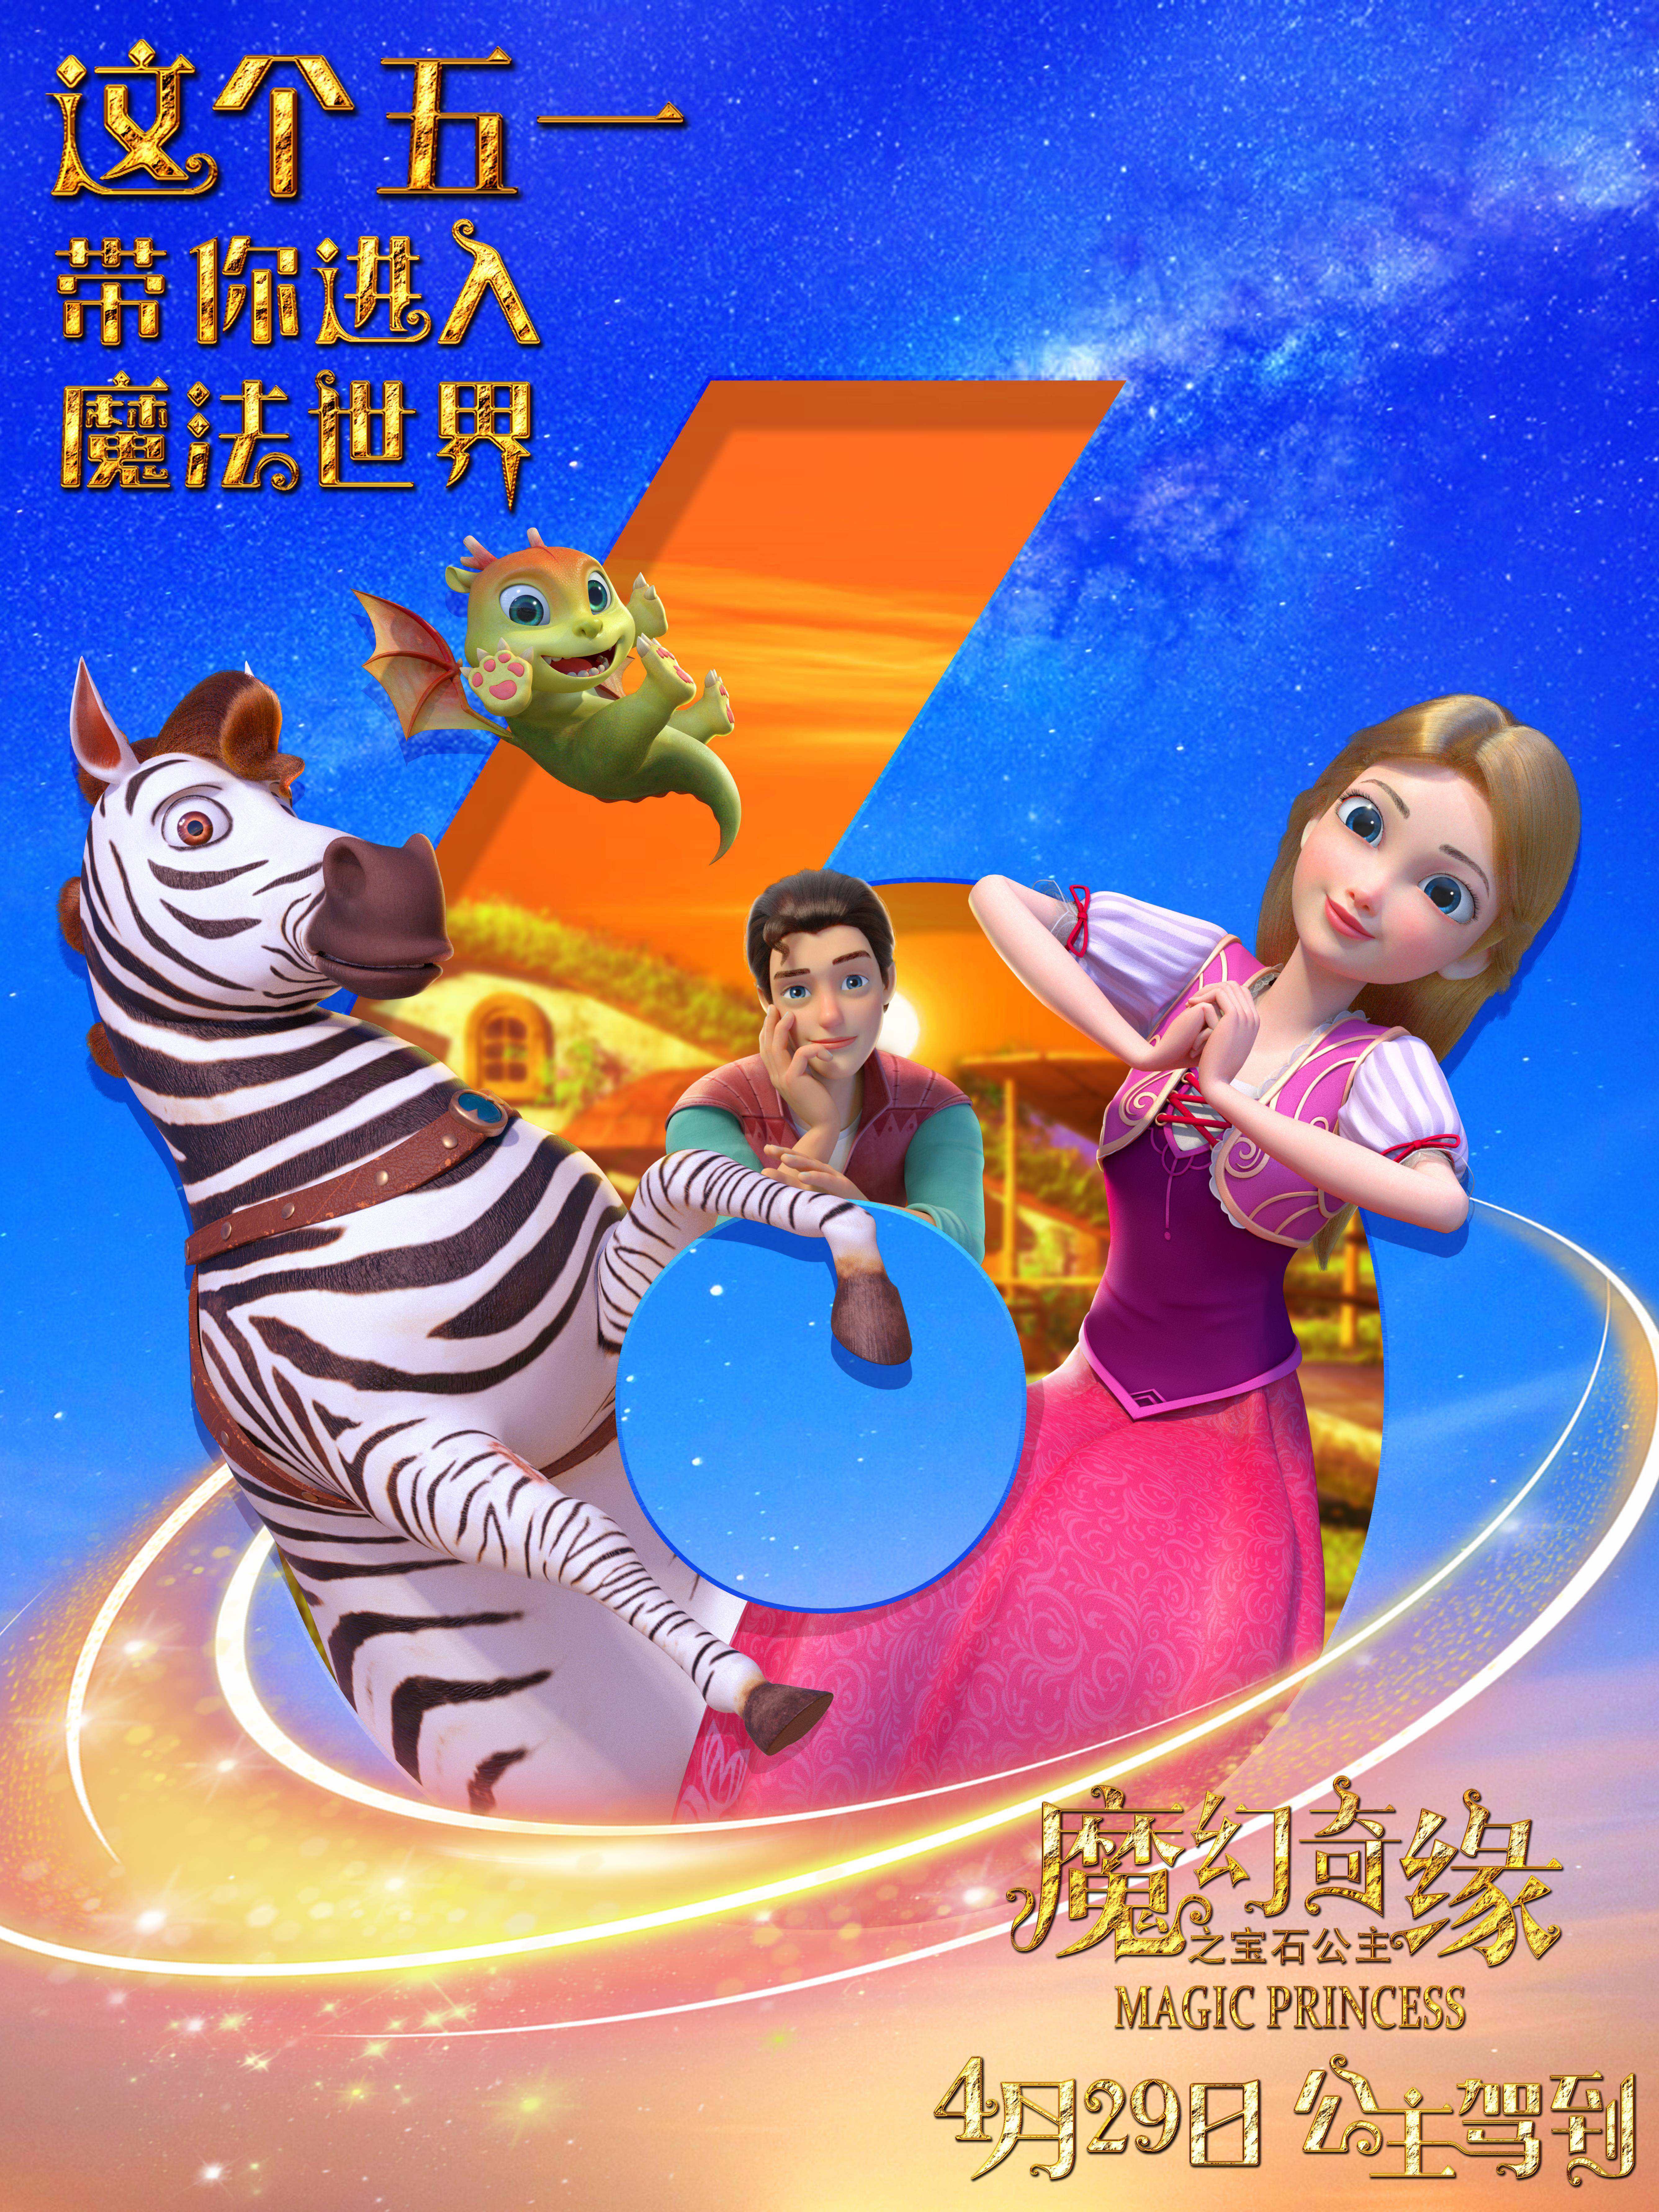 动画《魔幻奇缘之宝石公主》发布倒计时6天版海报